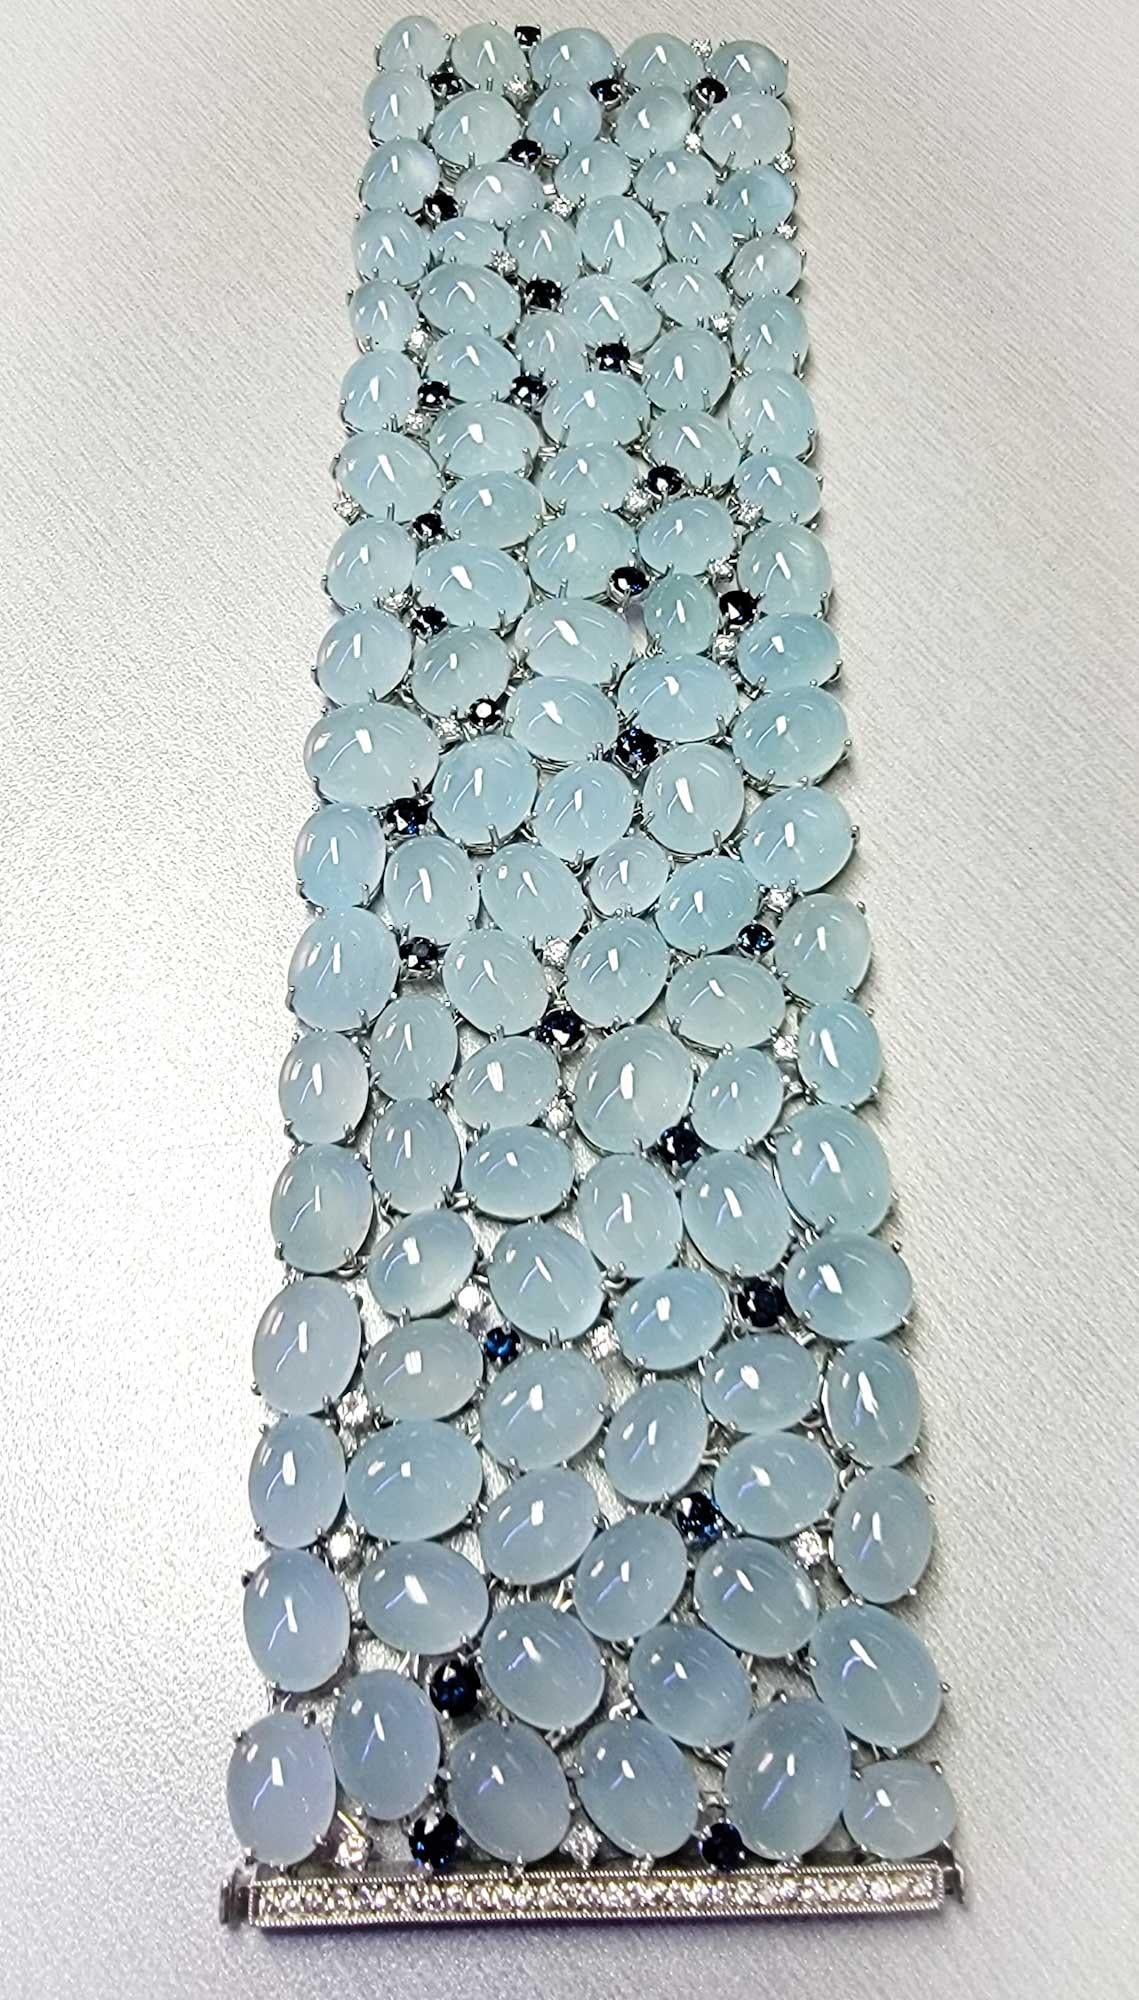 Round Cut Unique Platinum Bracelet with 266.6 Carats Aquamarine, Sapphires and Diamonds